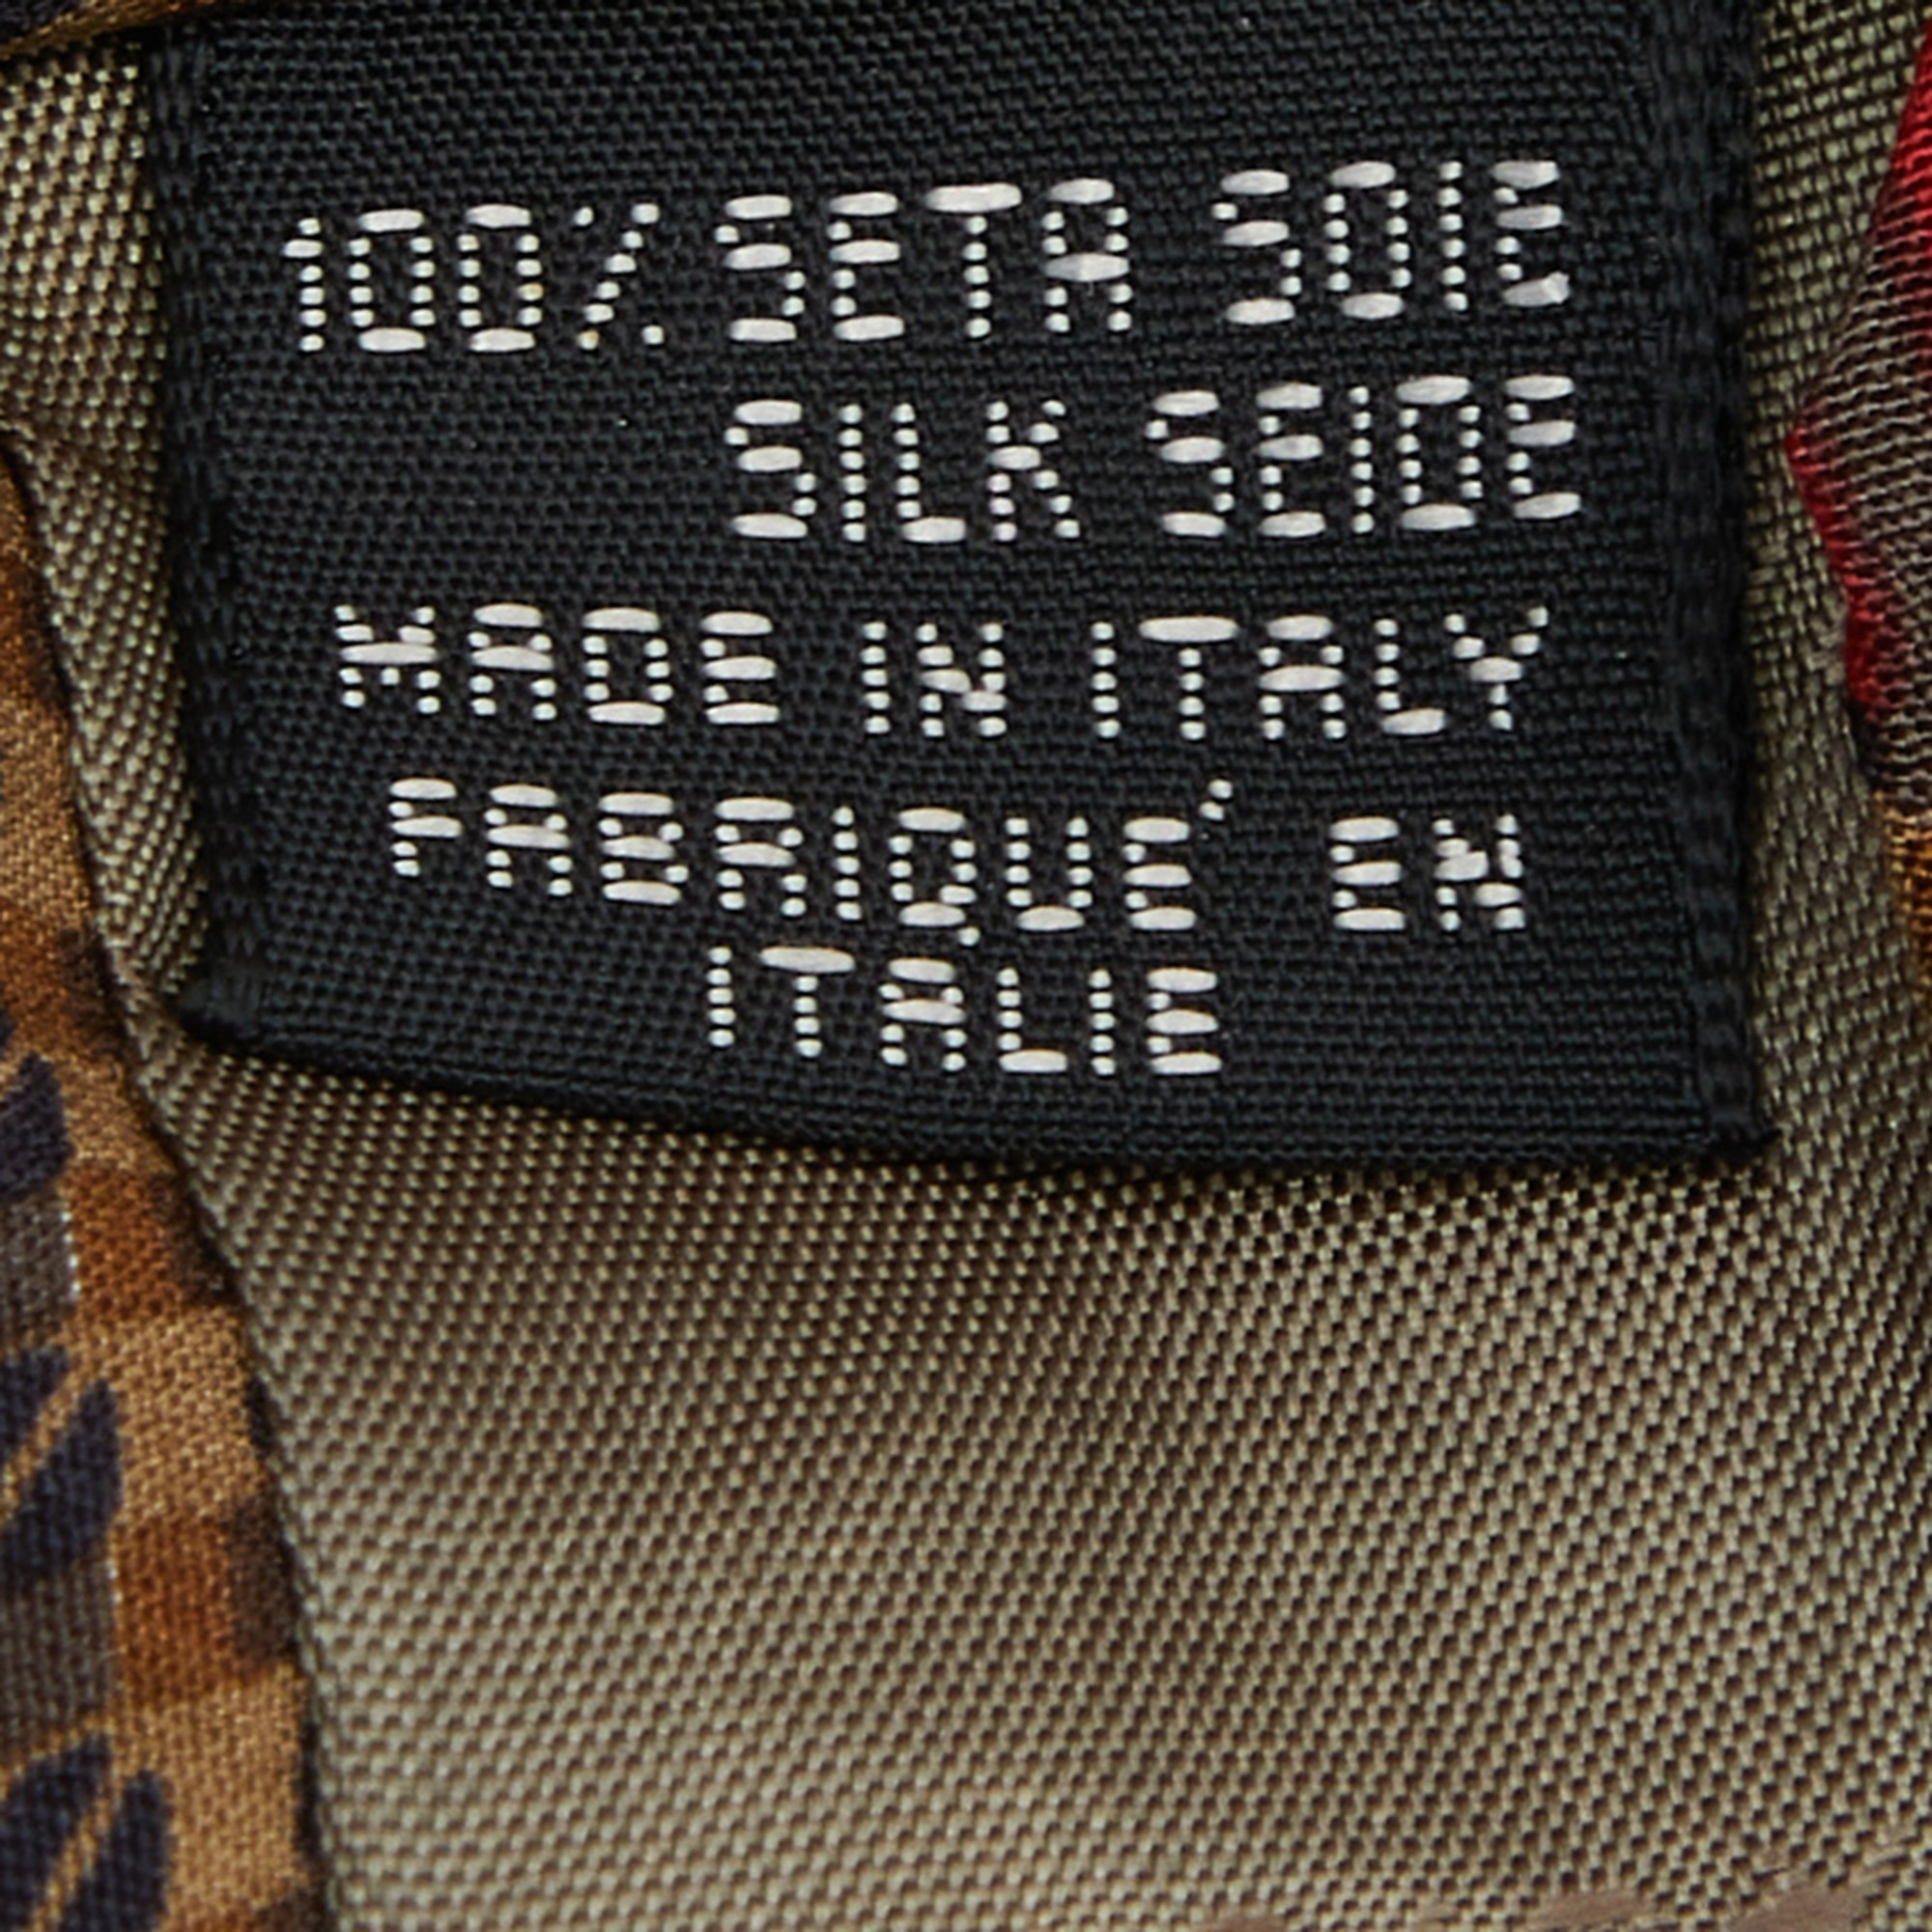 Giorgio Armani Red Printed Striped Silk Tie